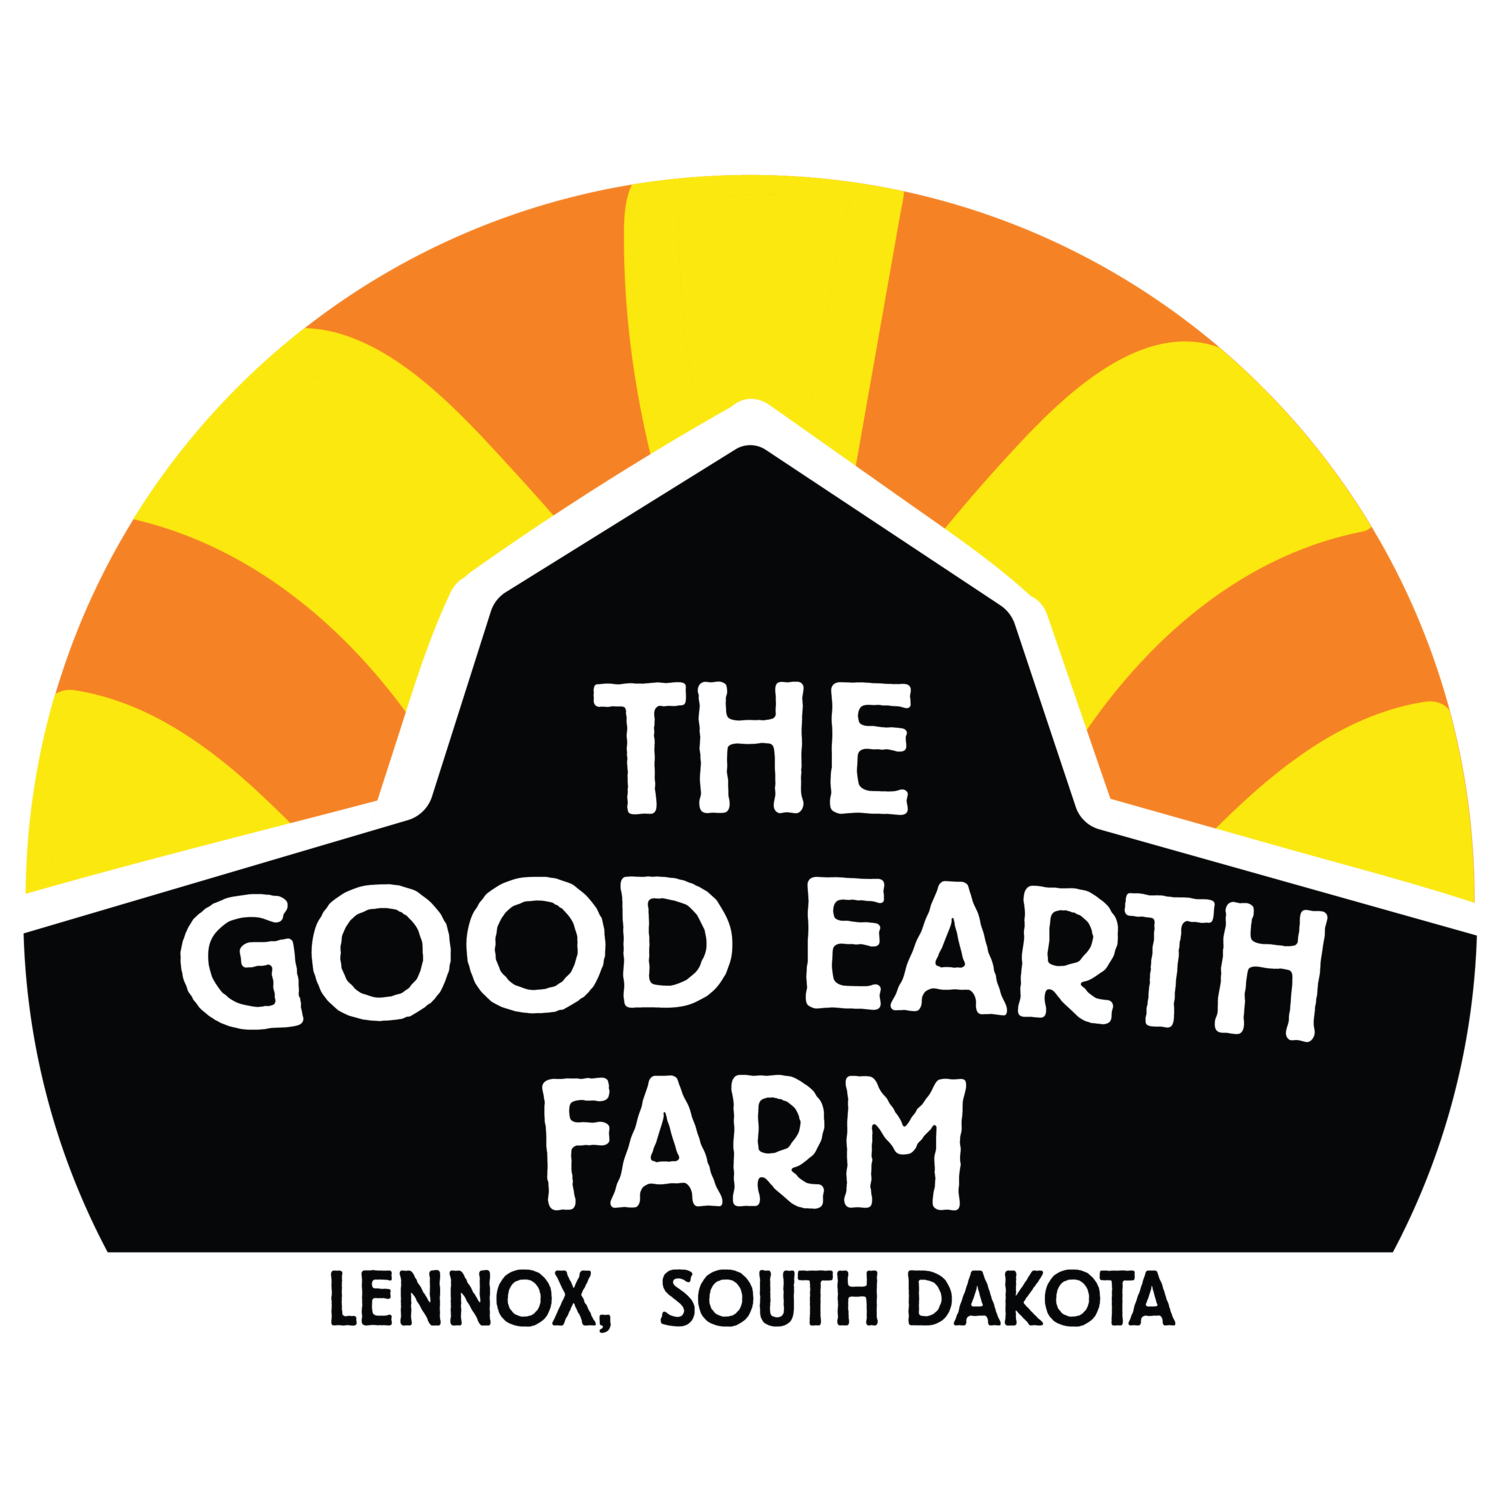 The Good Earth Farm